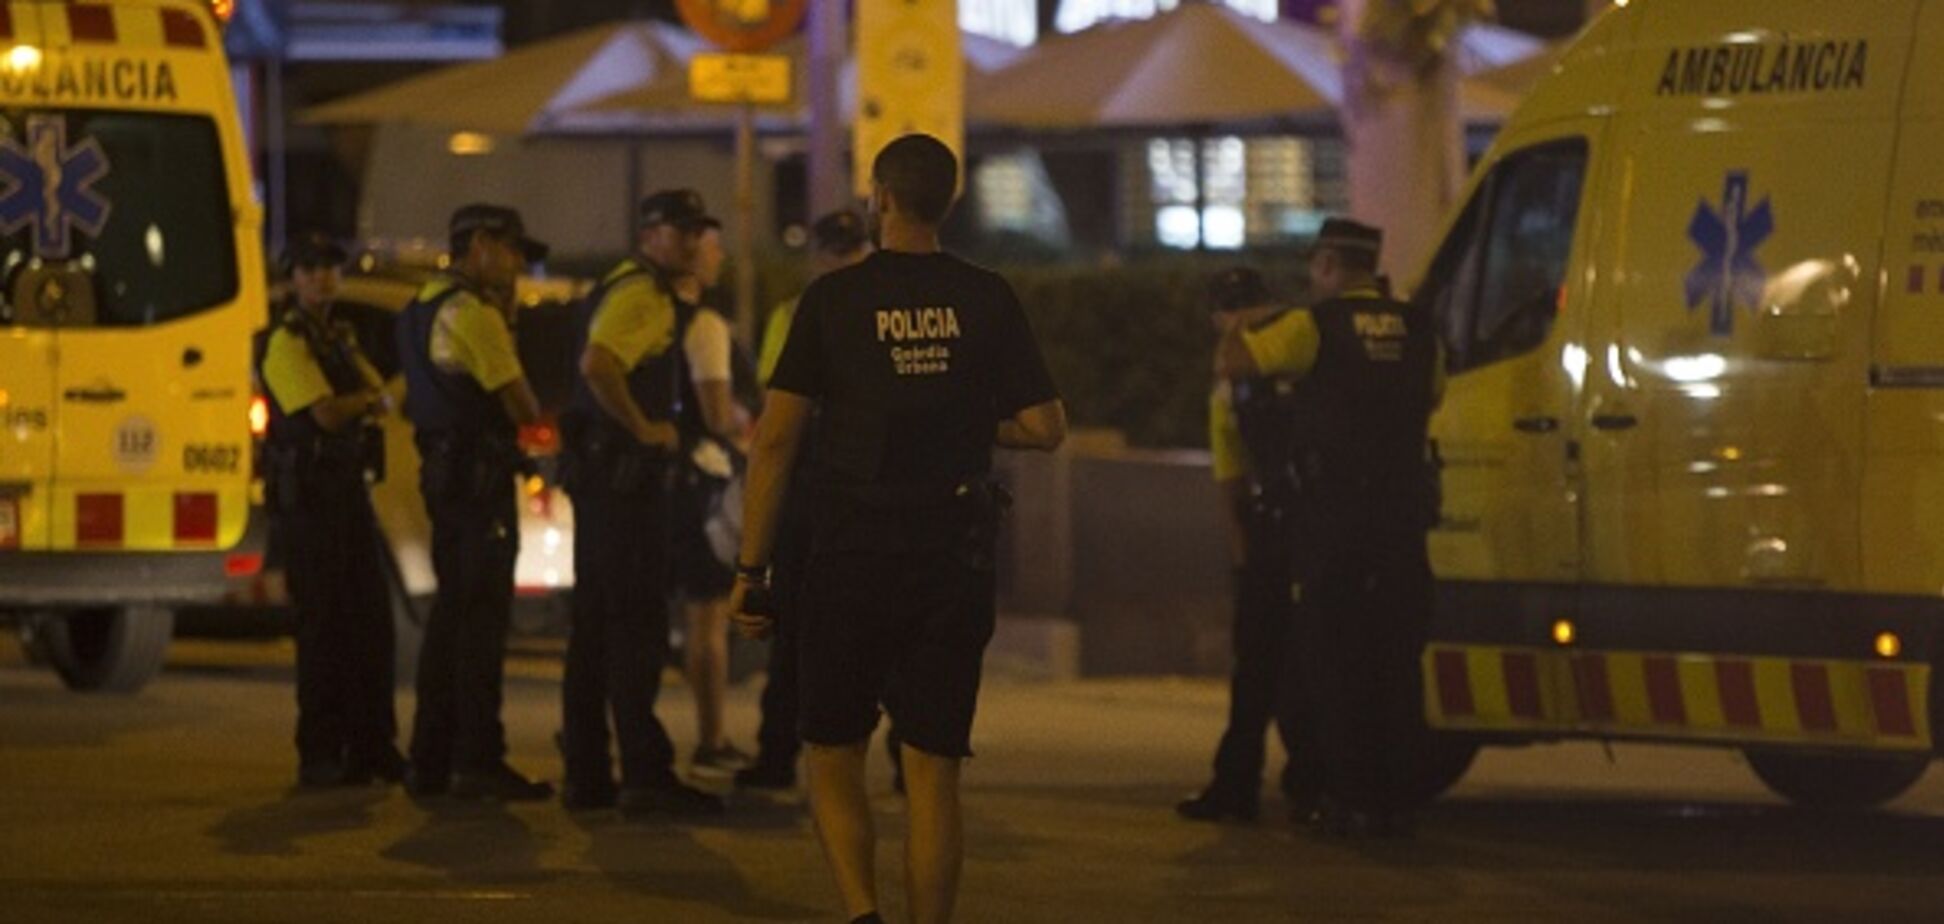 Теракт в Барселоне: число пострадавших превысило 100 человек 